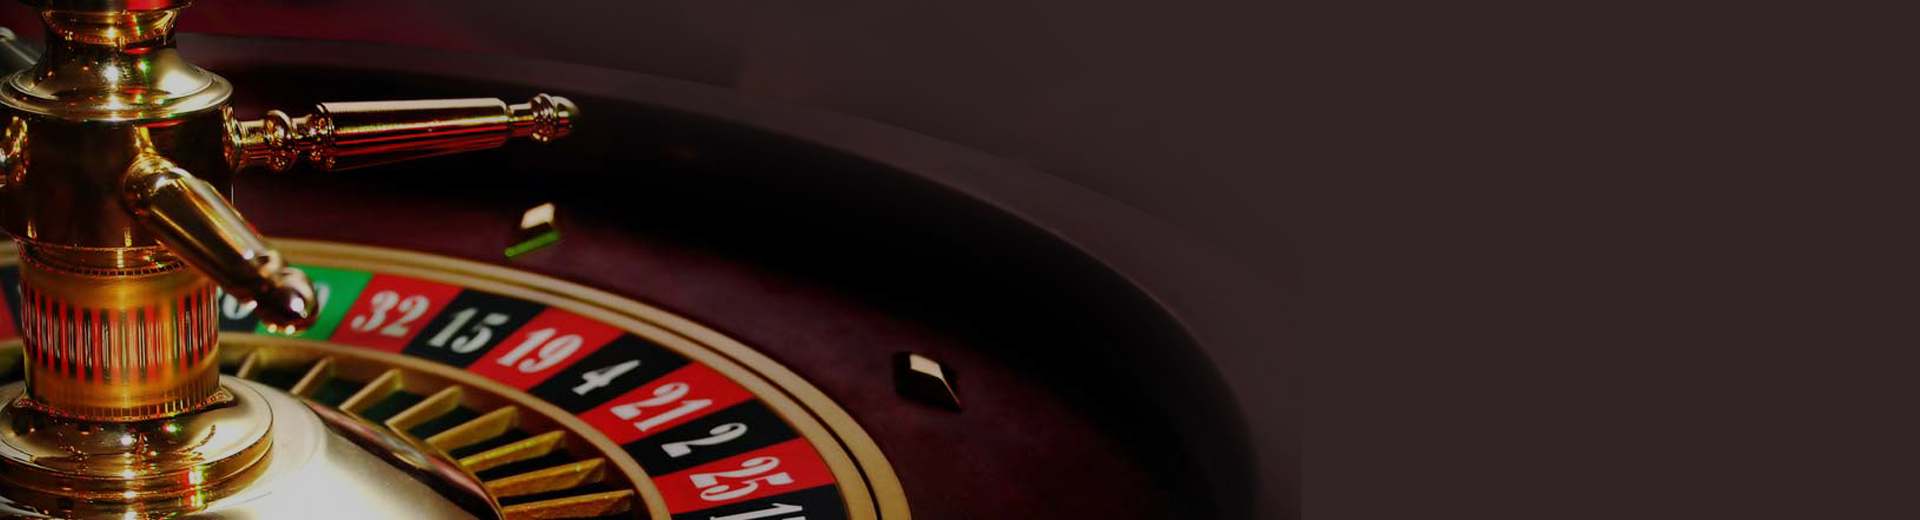 21 Casino No Deposit Bonus: 21 Bonus Spins